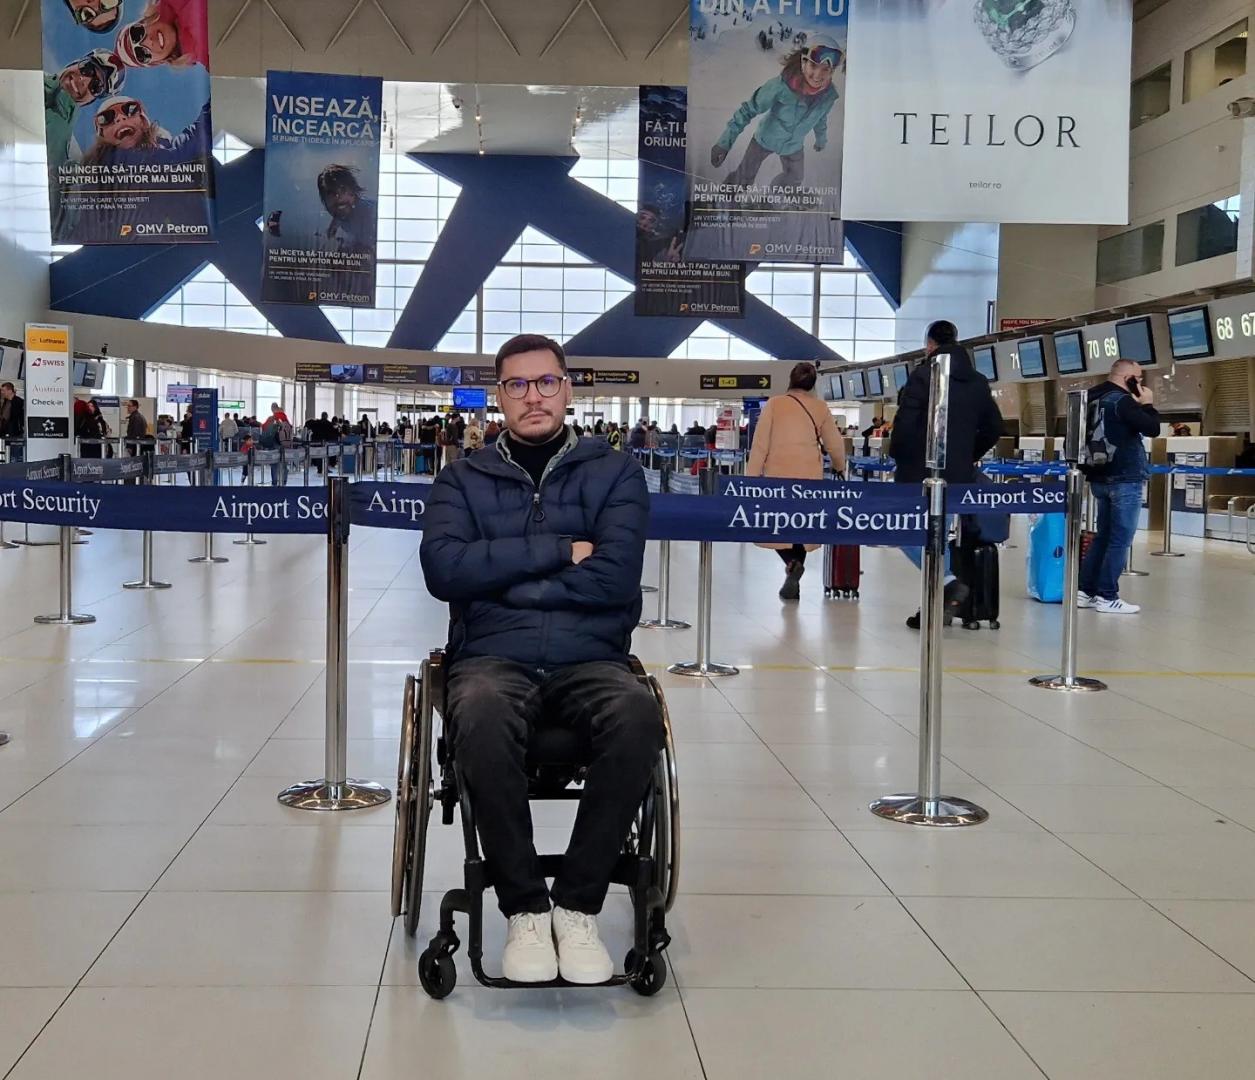 Un fost rugbist, imobilizat în scaun cu rotile, afirmă că nu i s-a permis îmbarcarea într-un avion TAROM pentru zborul spre Cluj, ”pe motiv de siguran